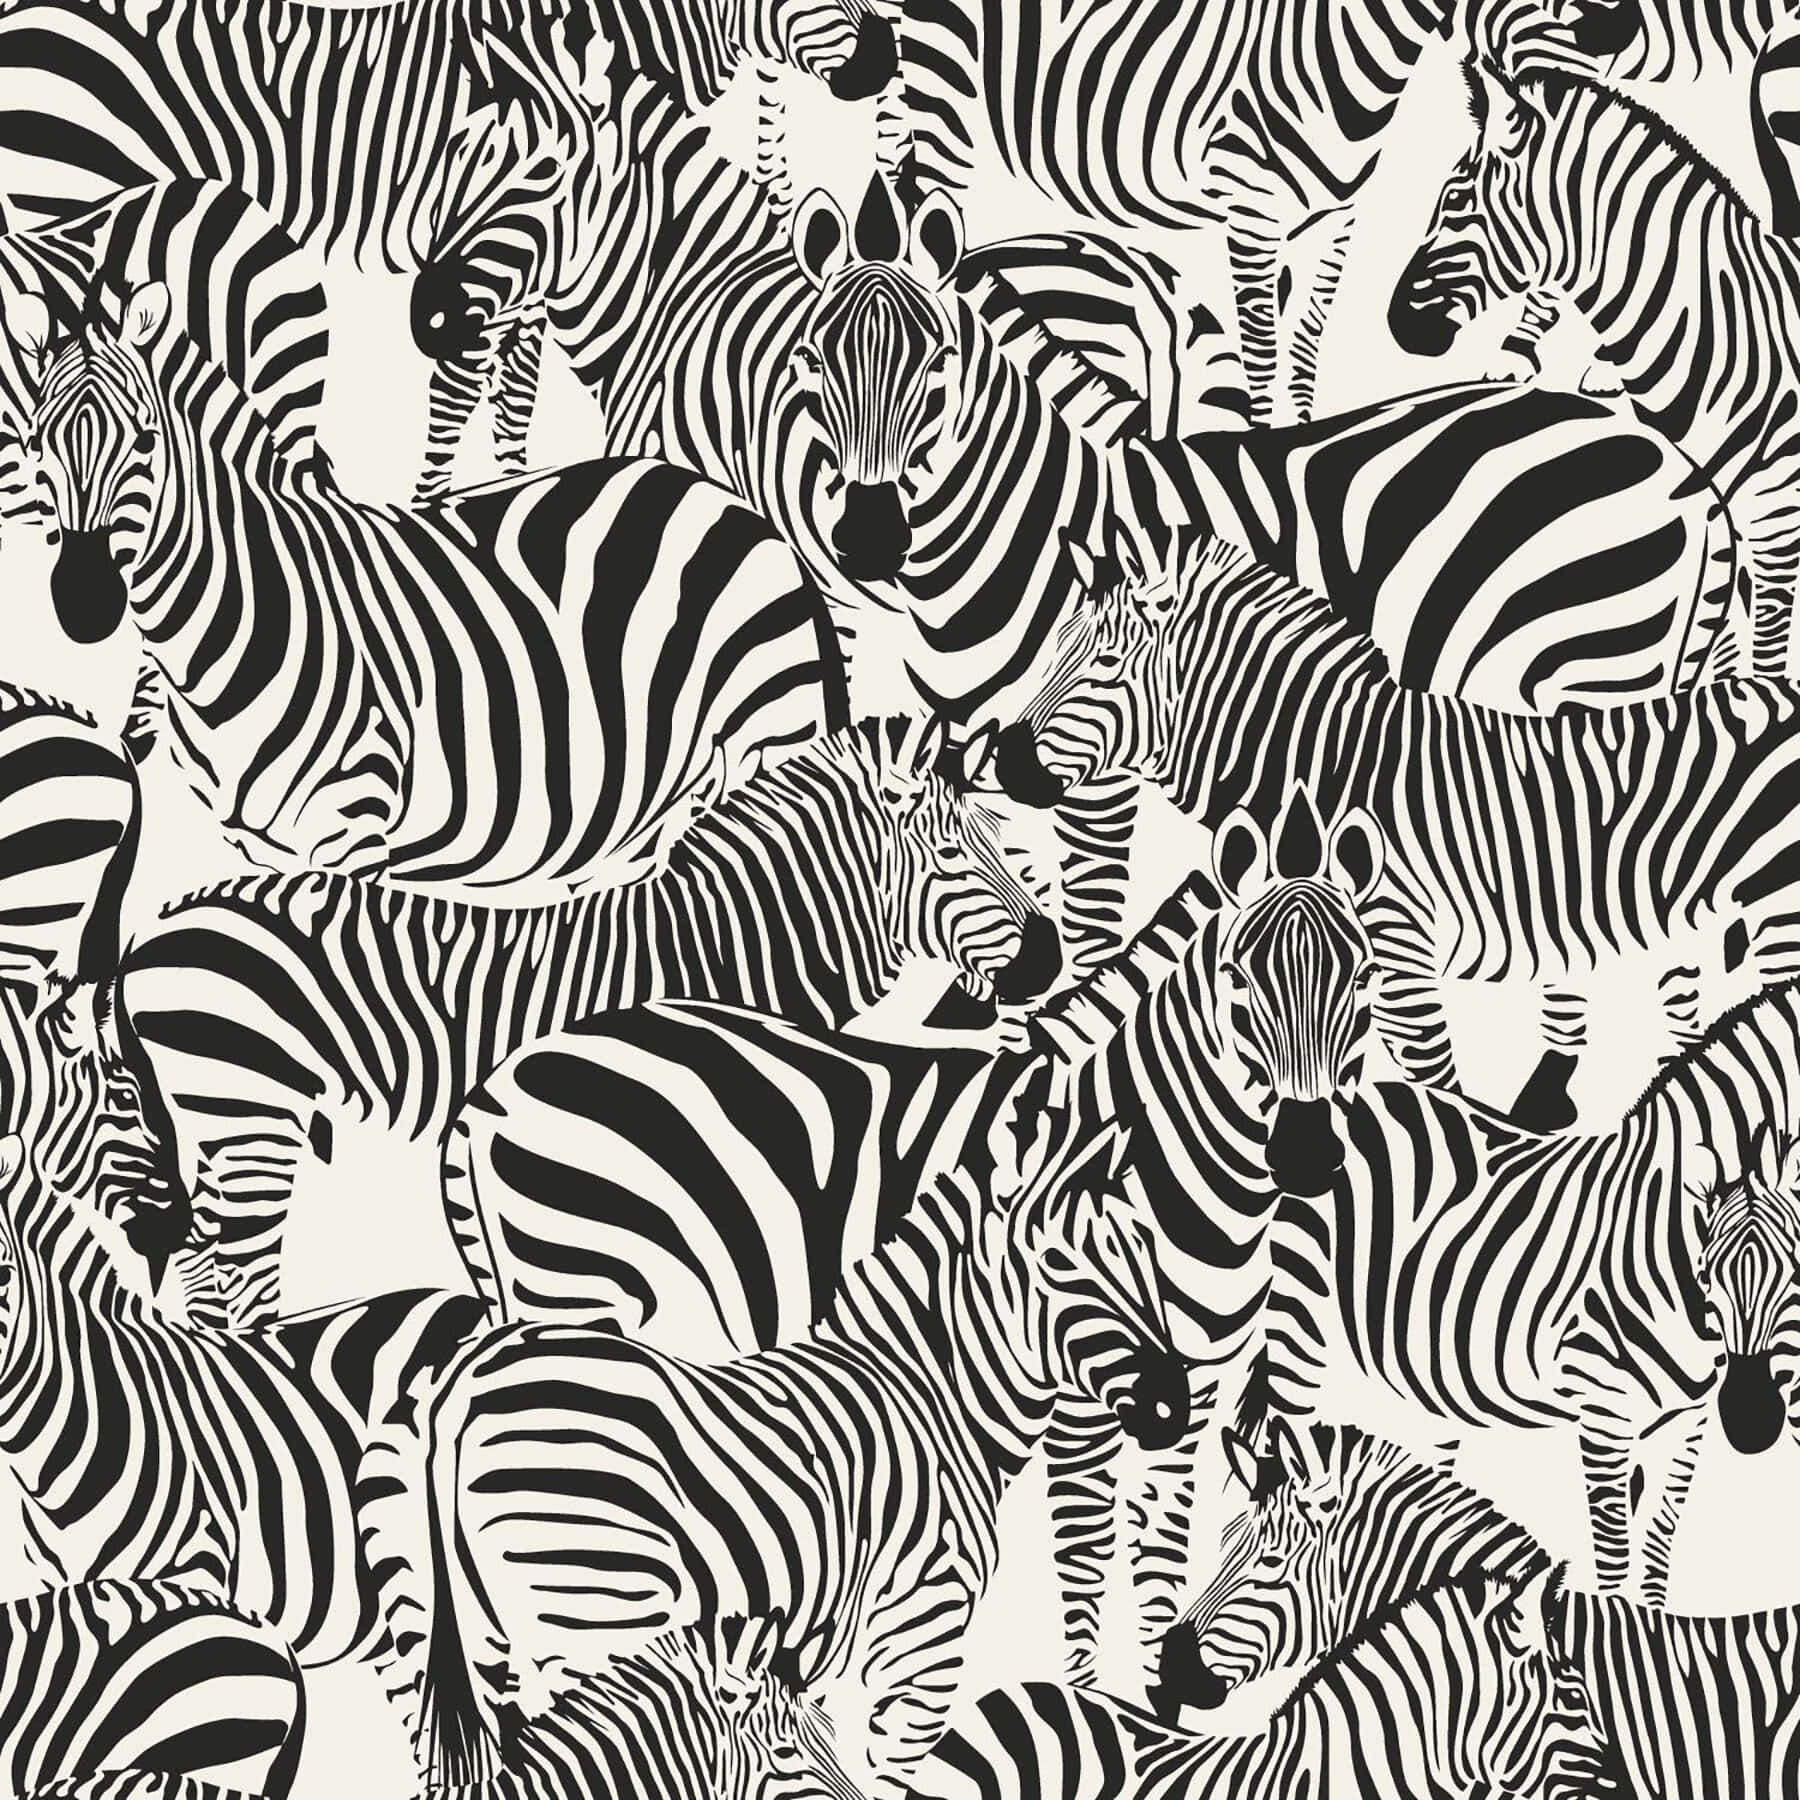 Einlebhaftes Schwarz-weißes Tiermuster-design. Wallpaper